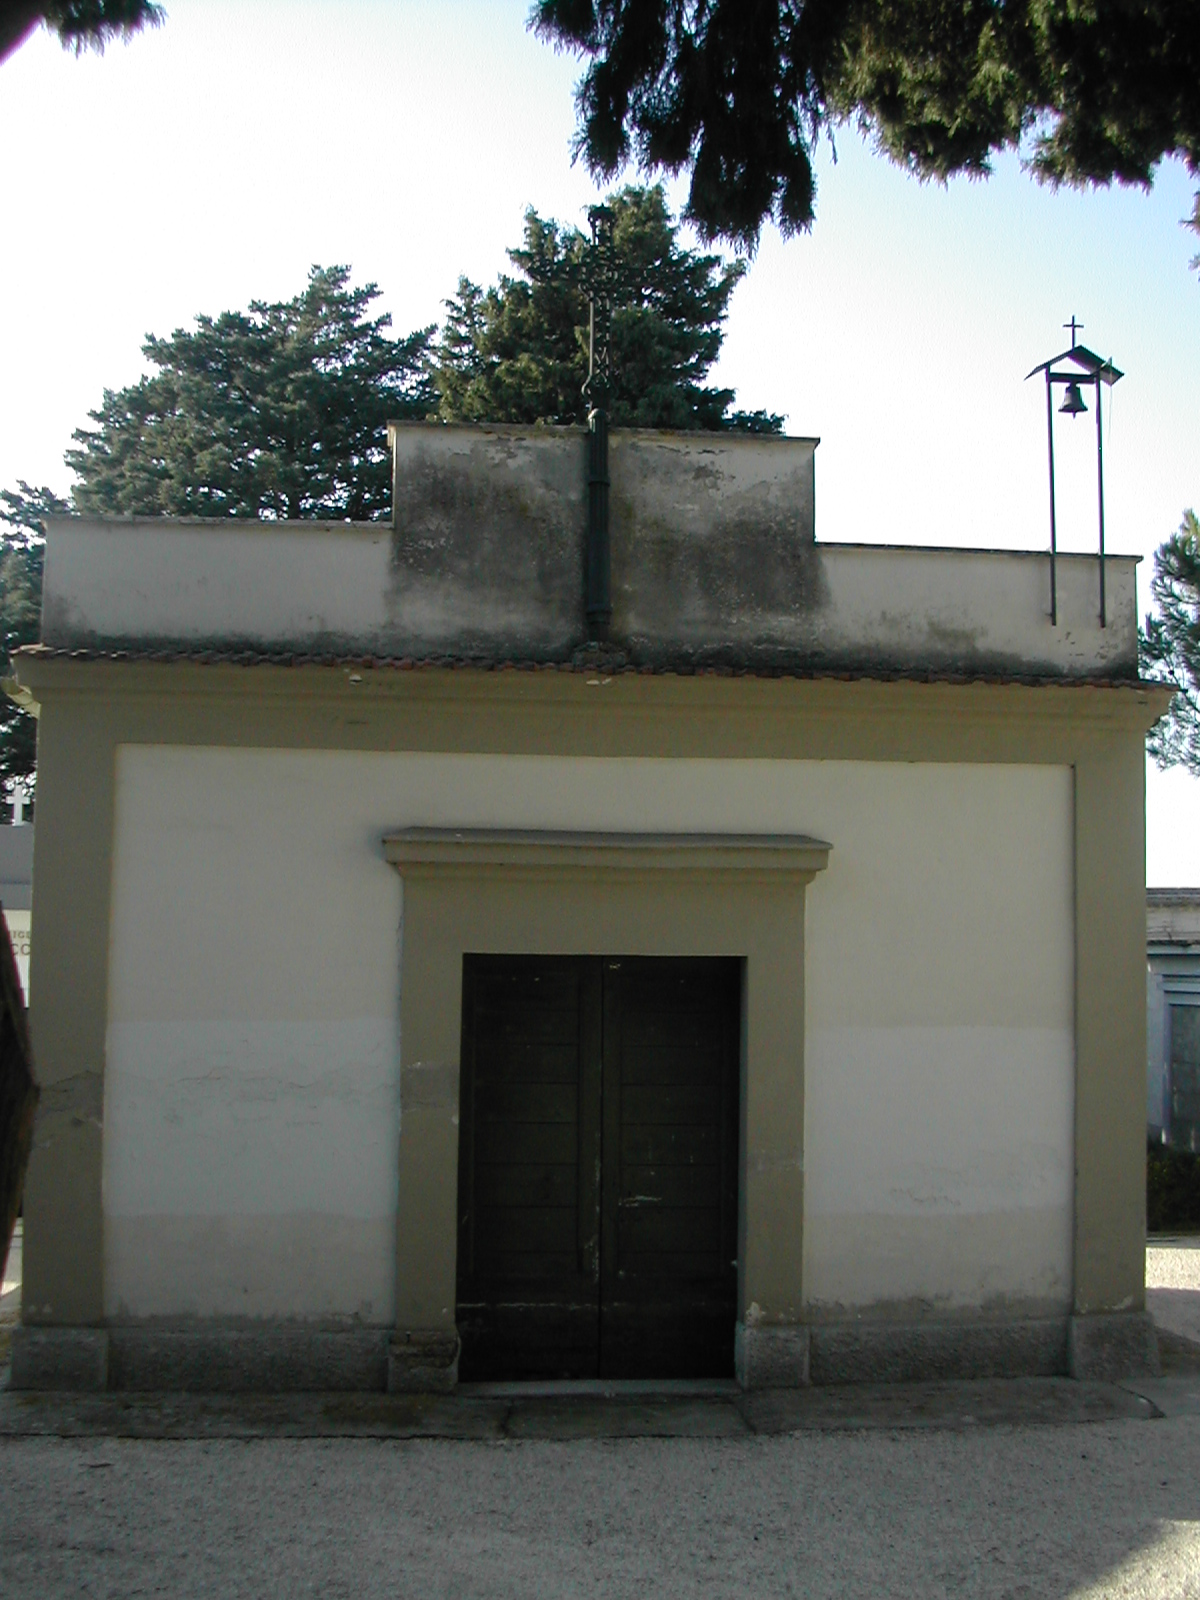 Chiesa del cimitero (chiesa, cimiteriale) - Camerata Picena (AN) 